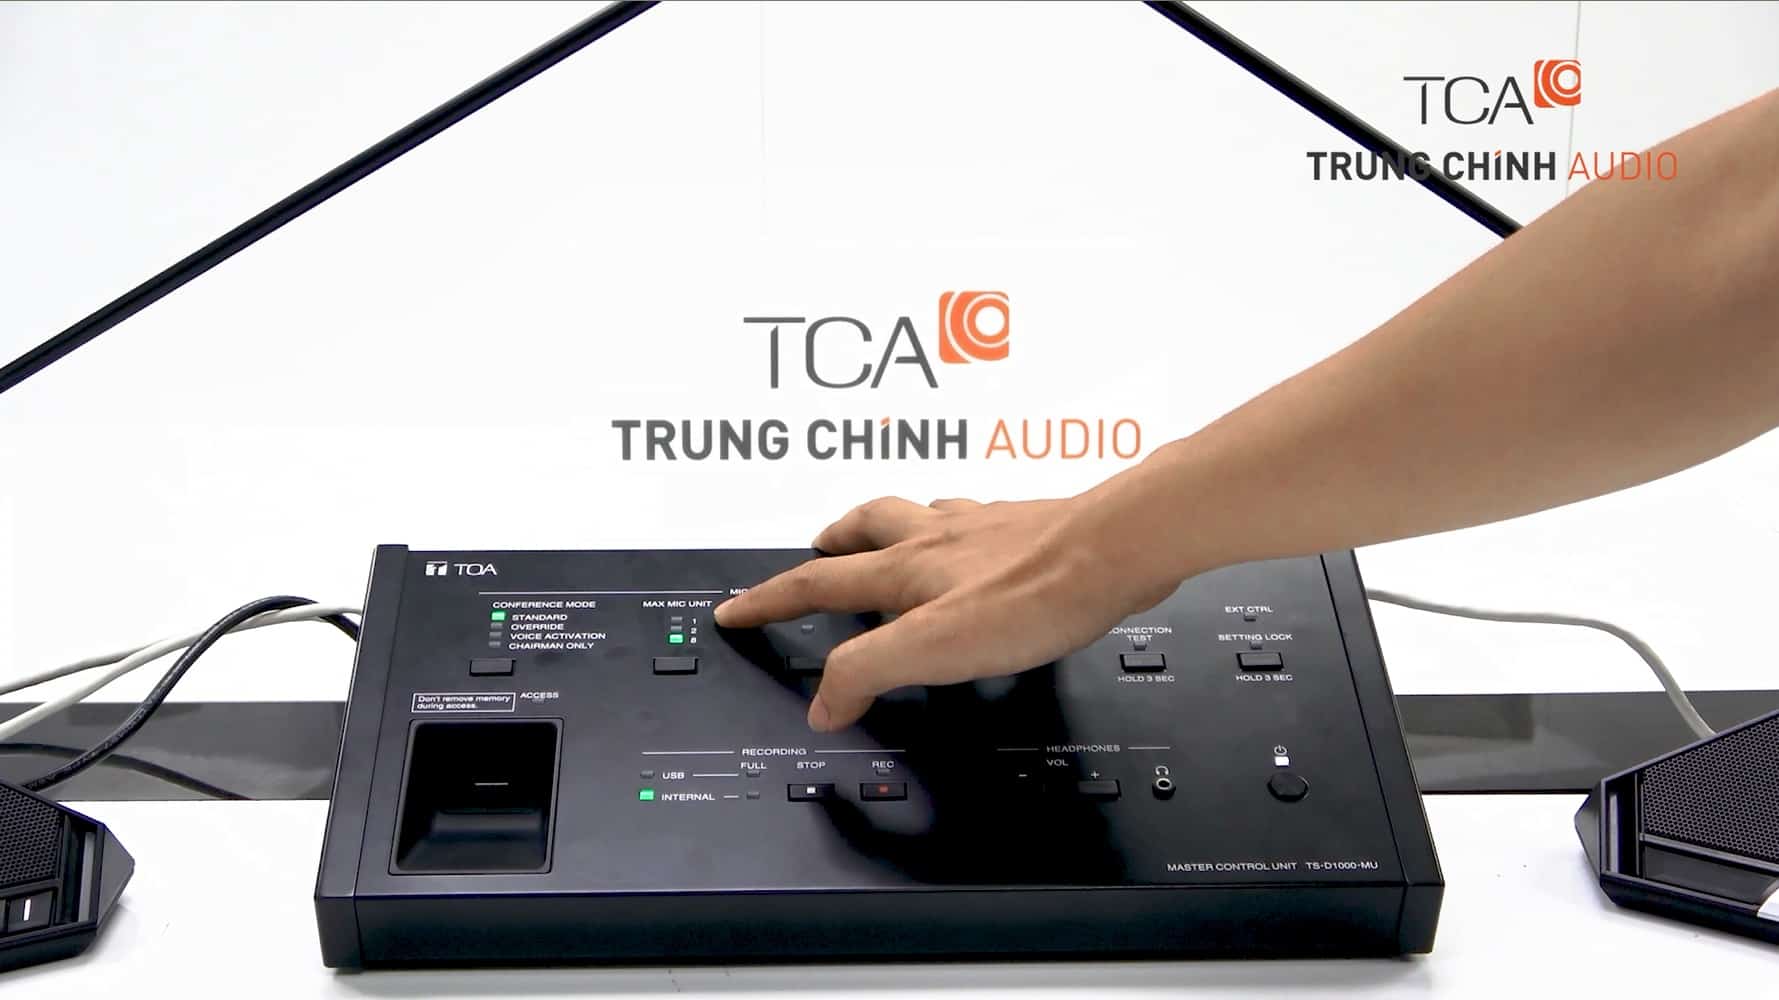 Hệ thống hội thảo TOA TS-D1000 thiết bị âm thanh phòng họp hội chẩn trực tuyến